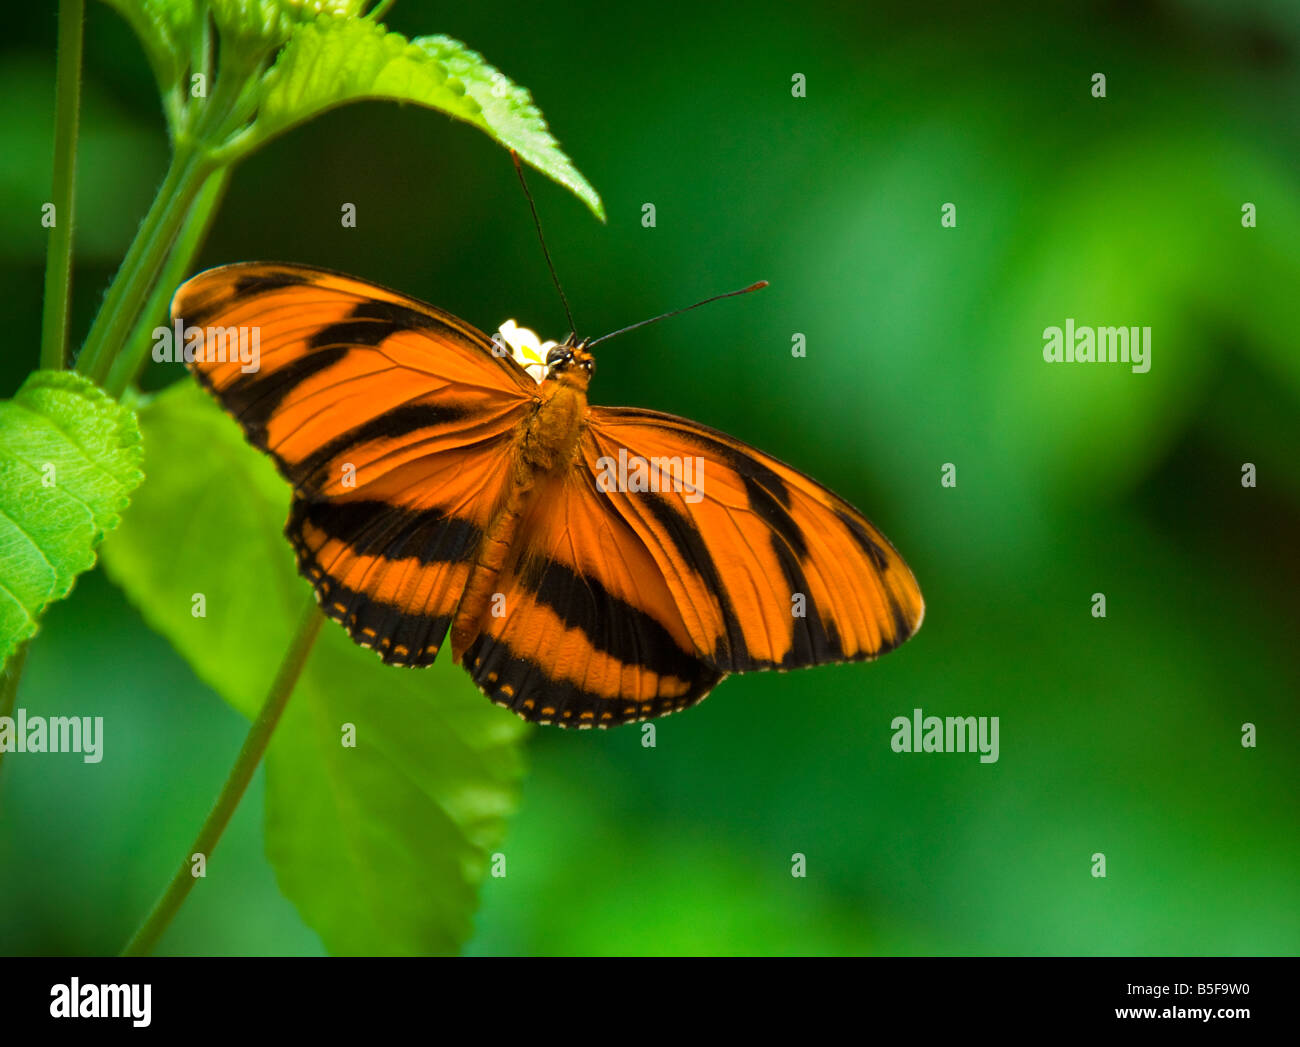 Banded Orange Butterfly Dryadula phaetusa Stock Photo